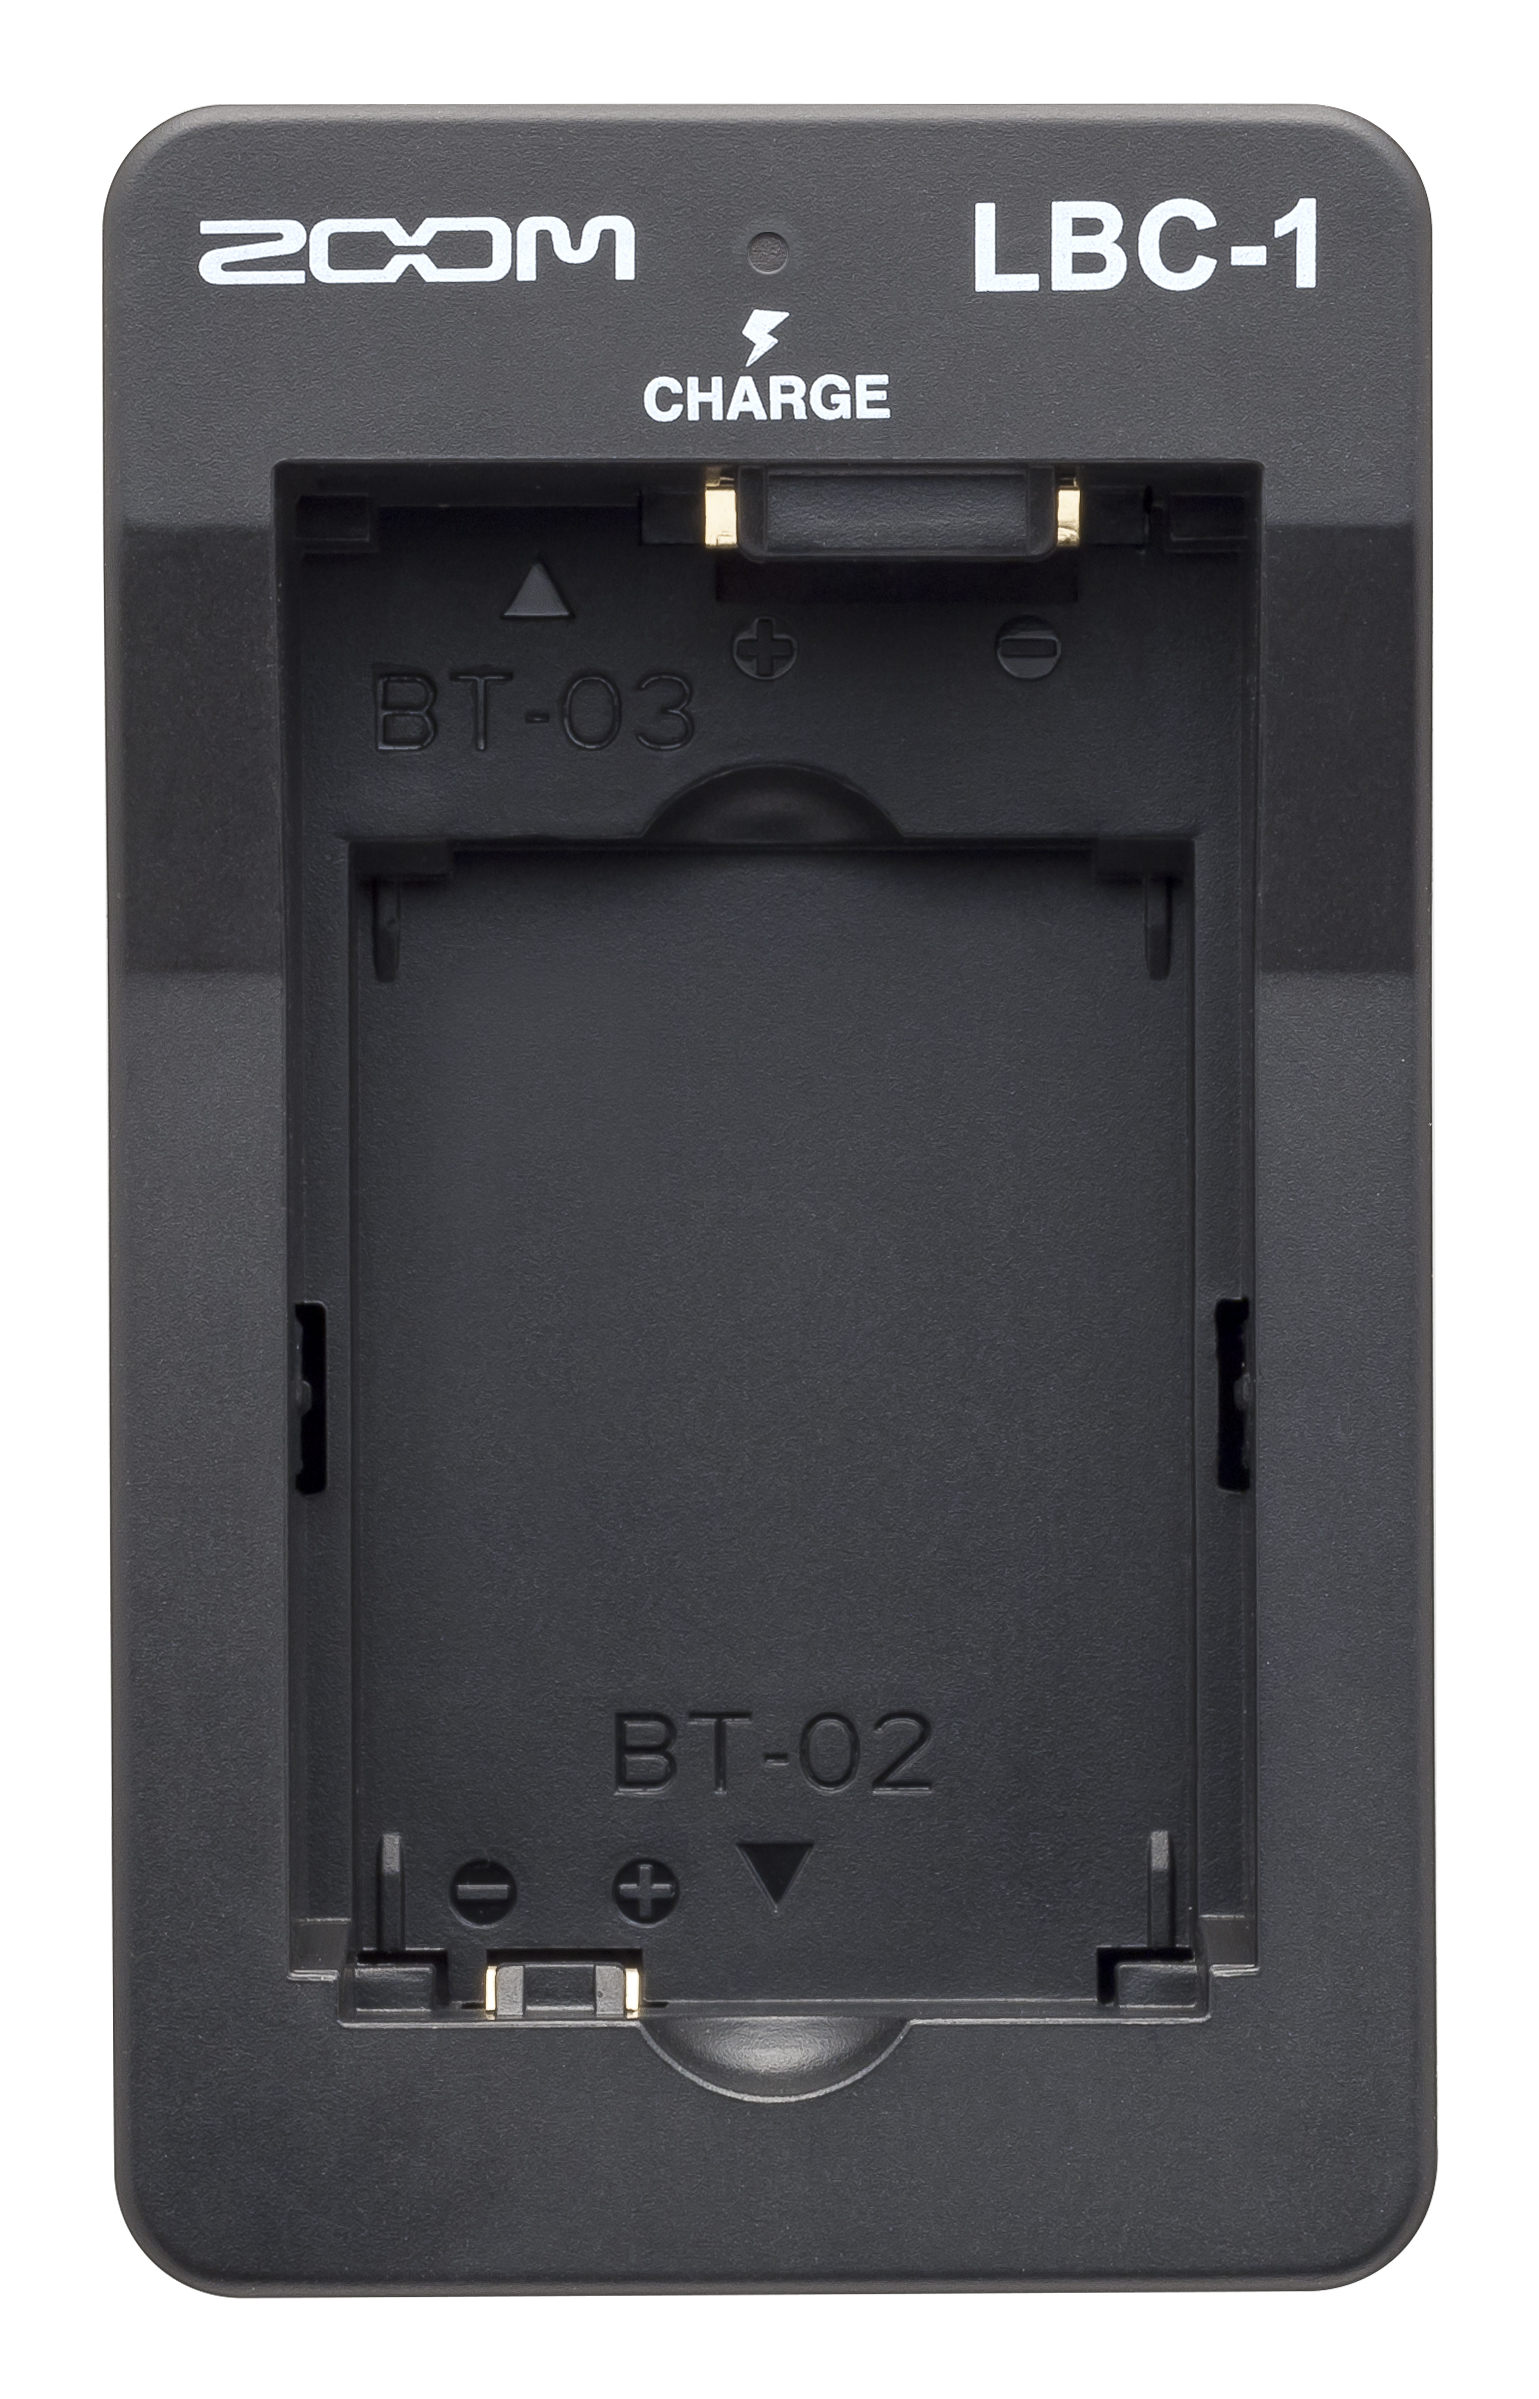 Zoom Lbc1 Chargeur Batterie Q8 - Chargeur Pile - Variation 2